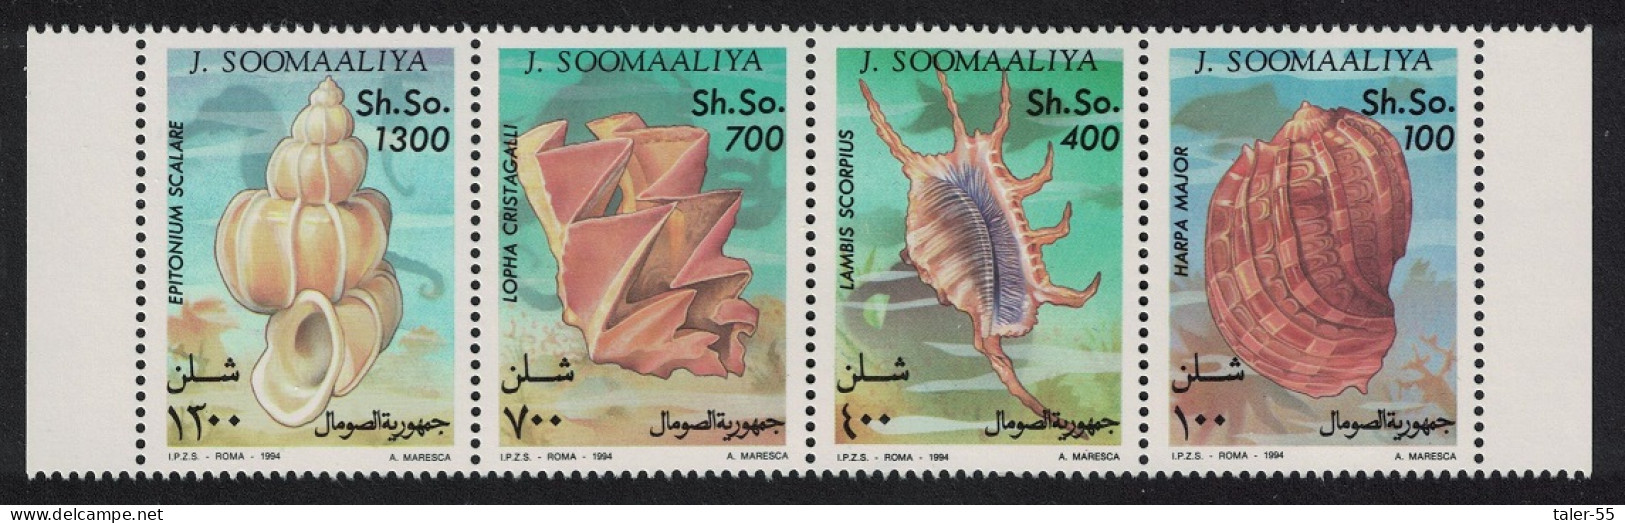 Somalia Shells 4v Strip 1994 MNH MI#507-510 - Somalia (1960-...)